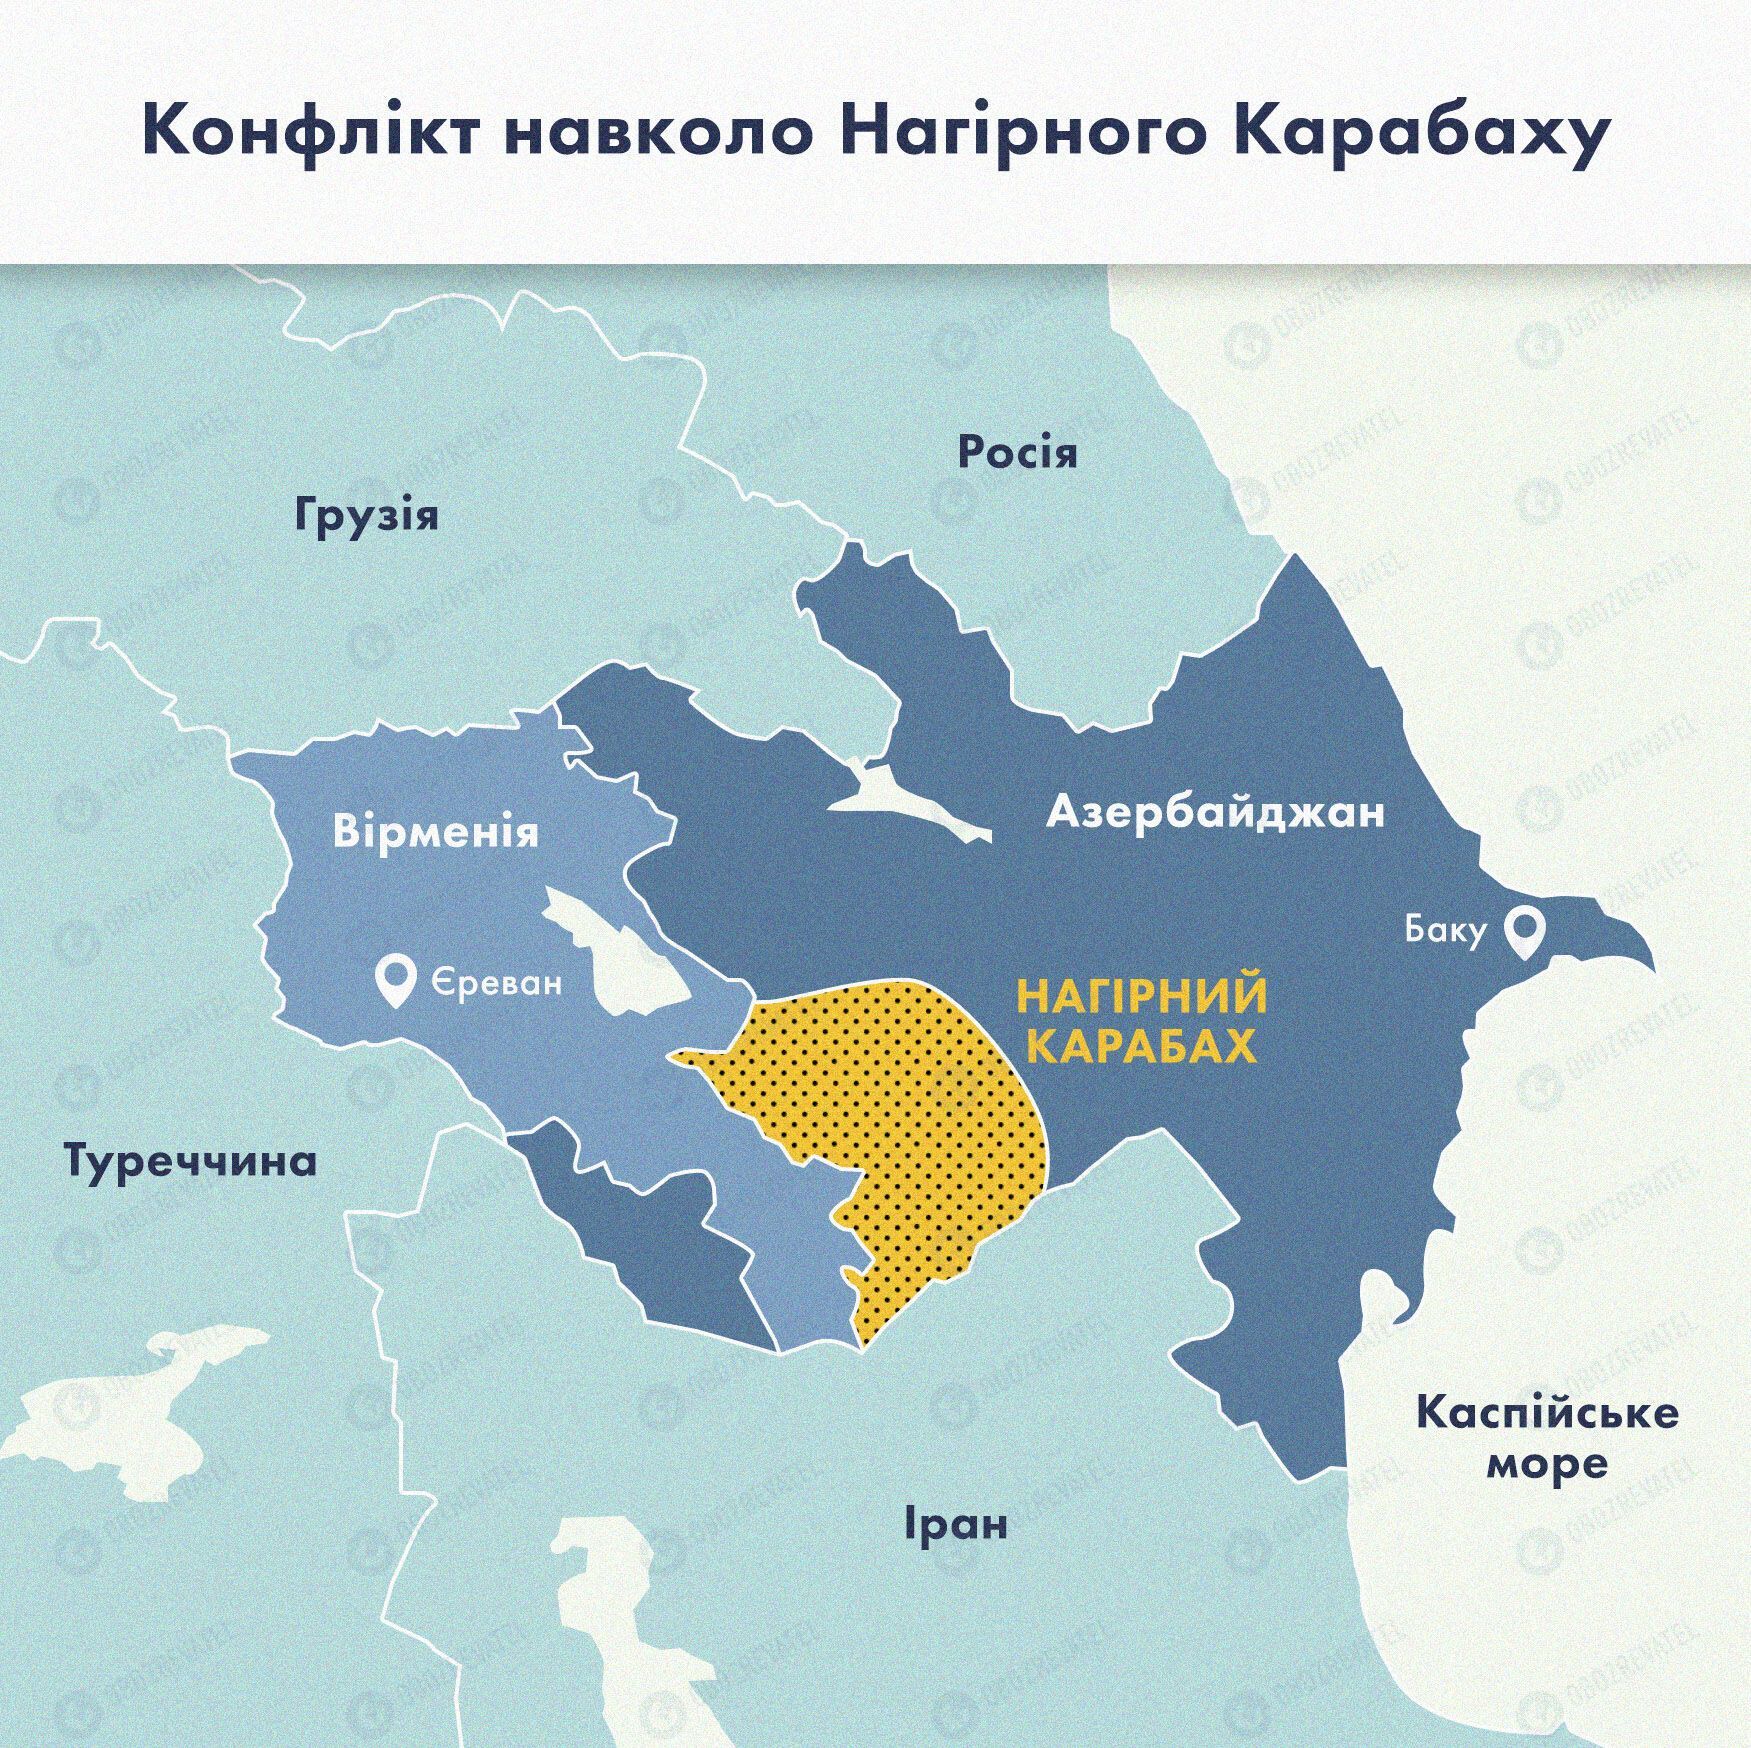 Карта конфлікту навколо Нагірного Карабаху.